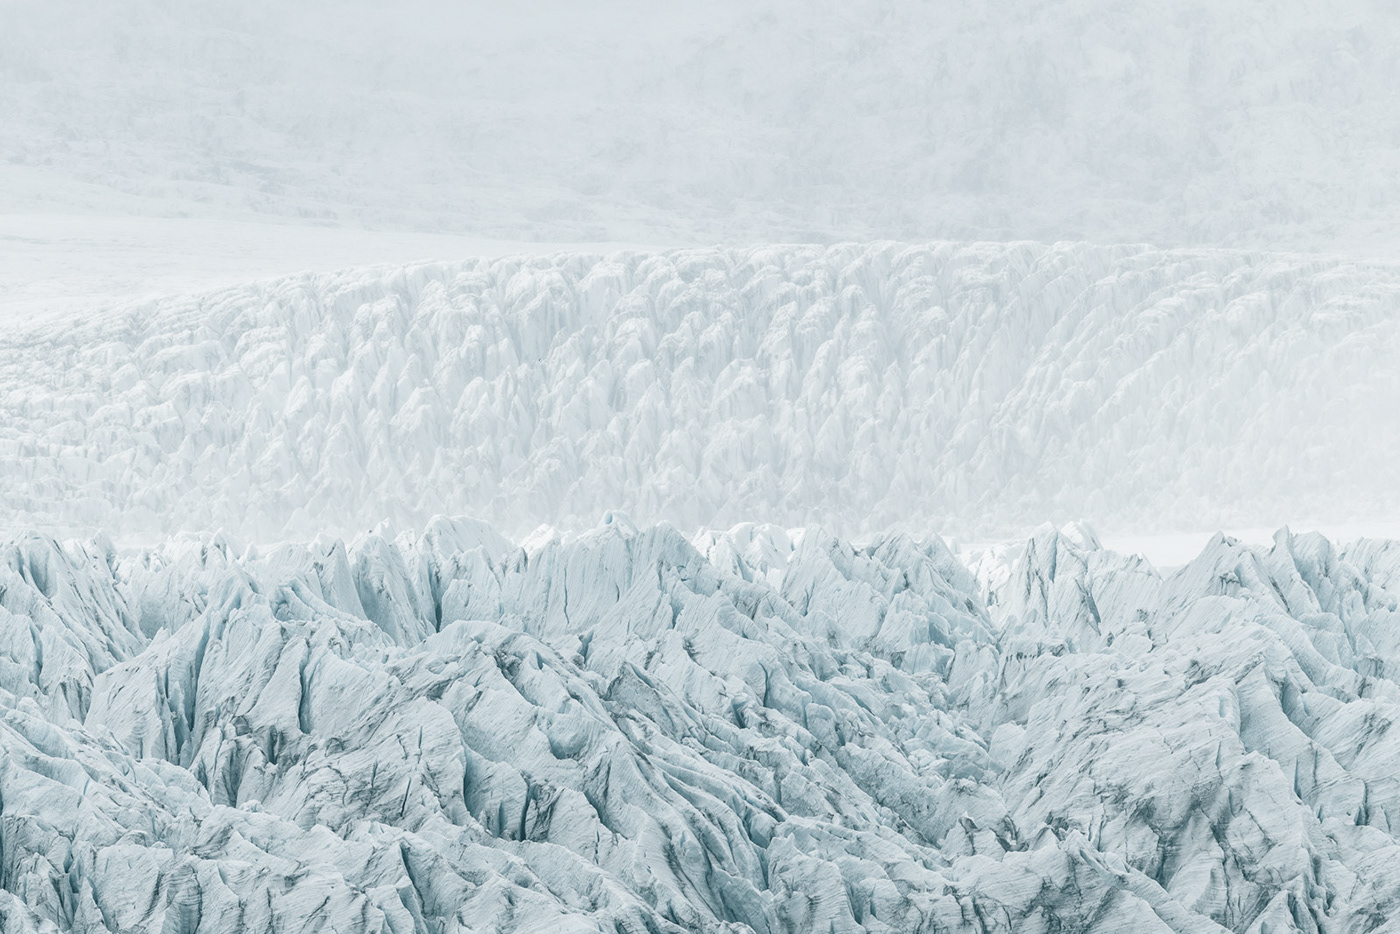 antarctica bright frozen glacier landscape photography light snow texture climate change global warming